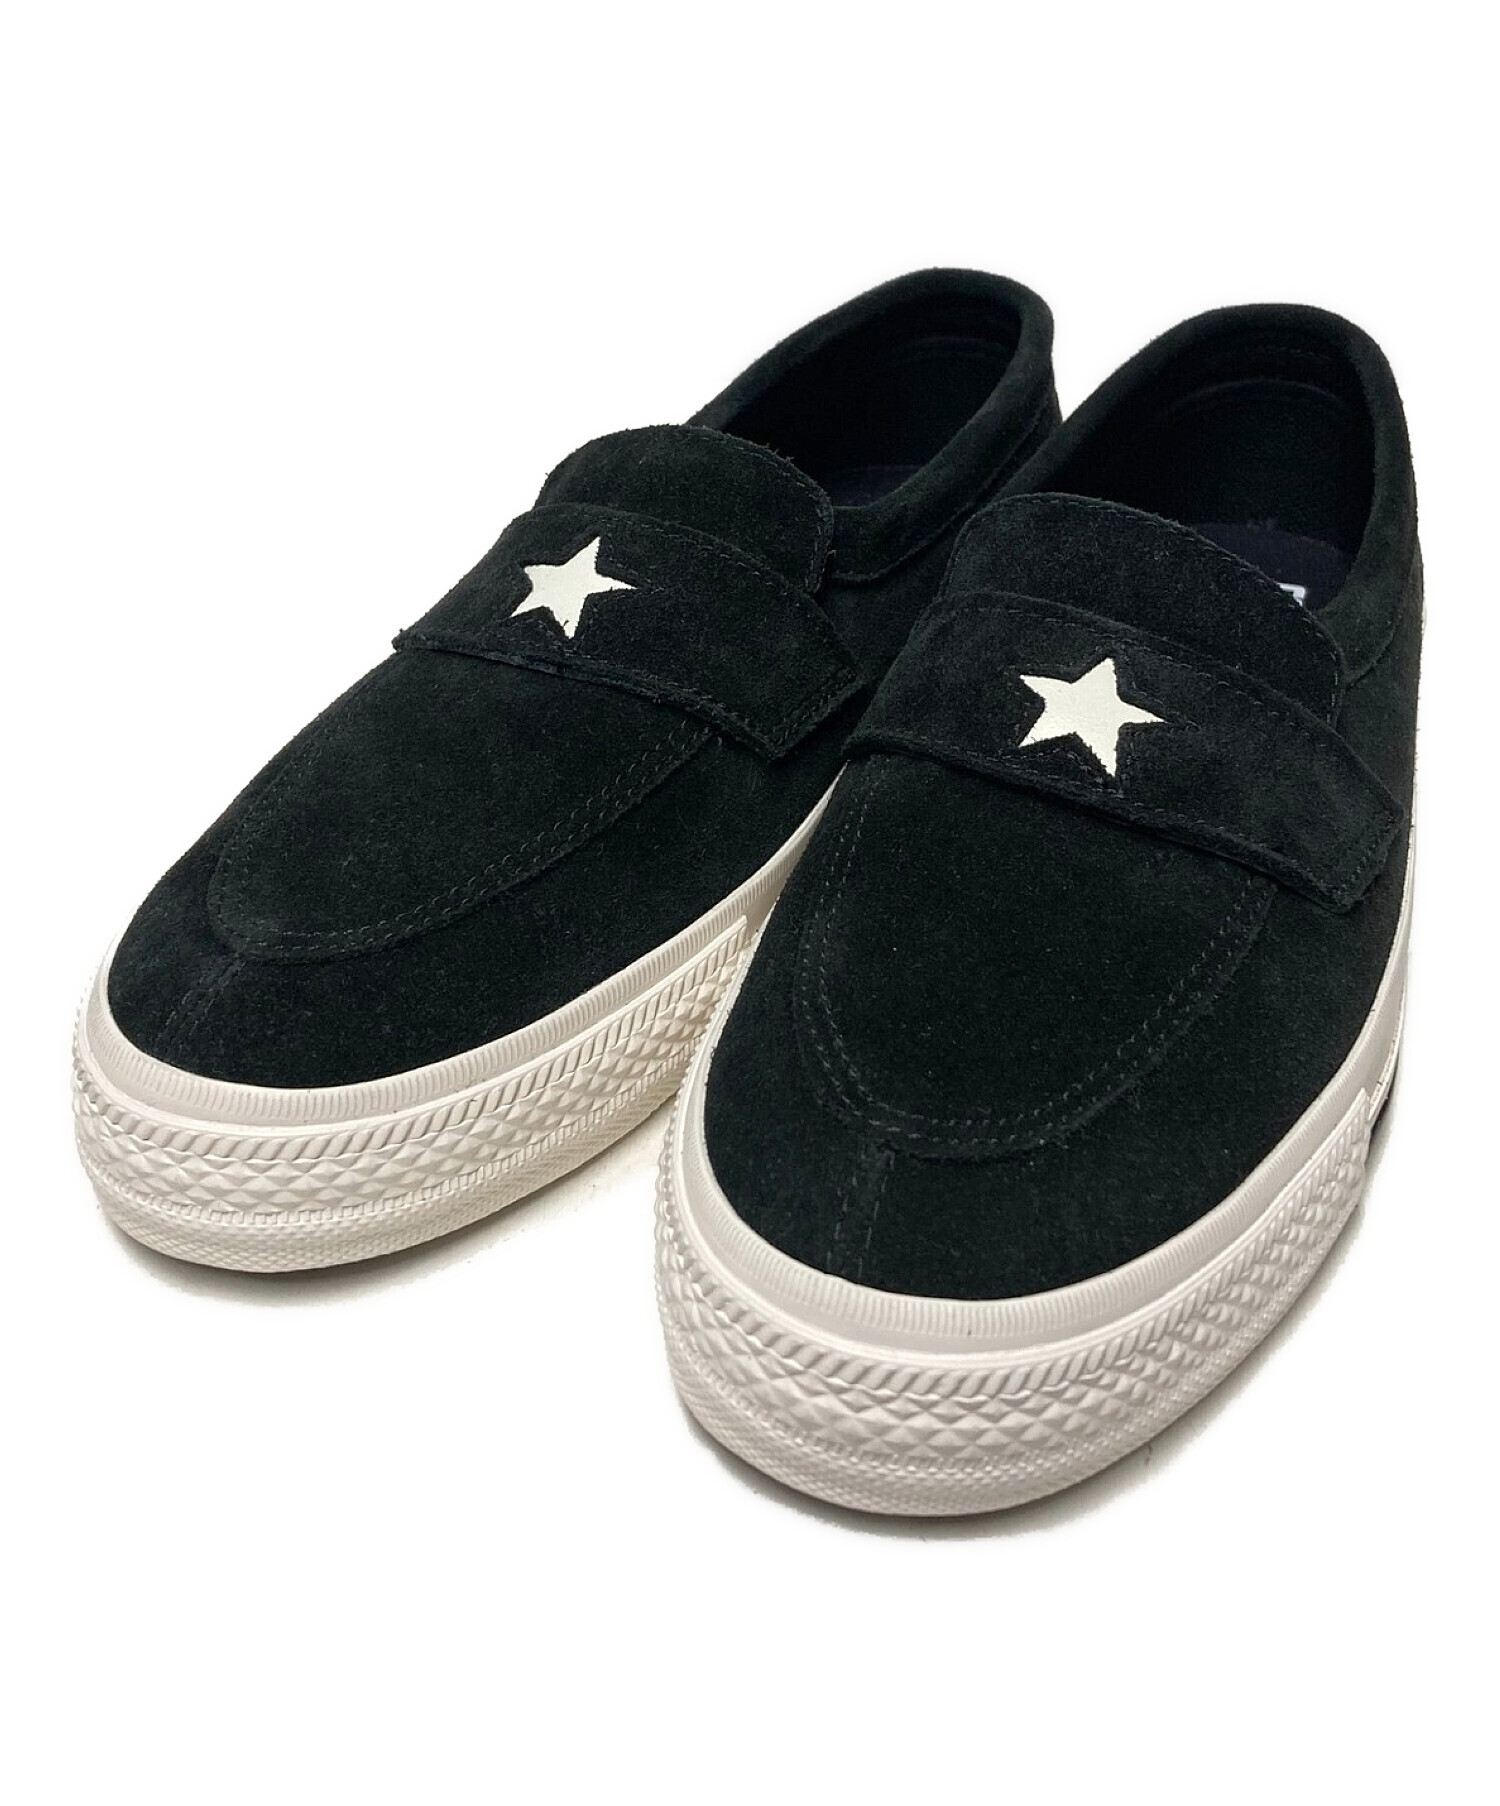 NEXUSVII (ネクサスセブン) CONVERSE ADDICT (コンバース アディクト) ONE STAR Loafer ブラック  サイズ:US7.5